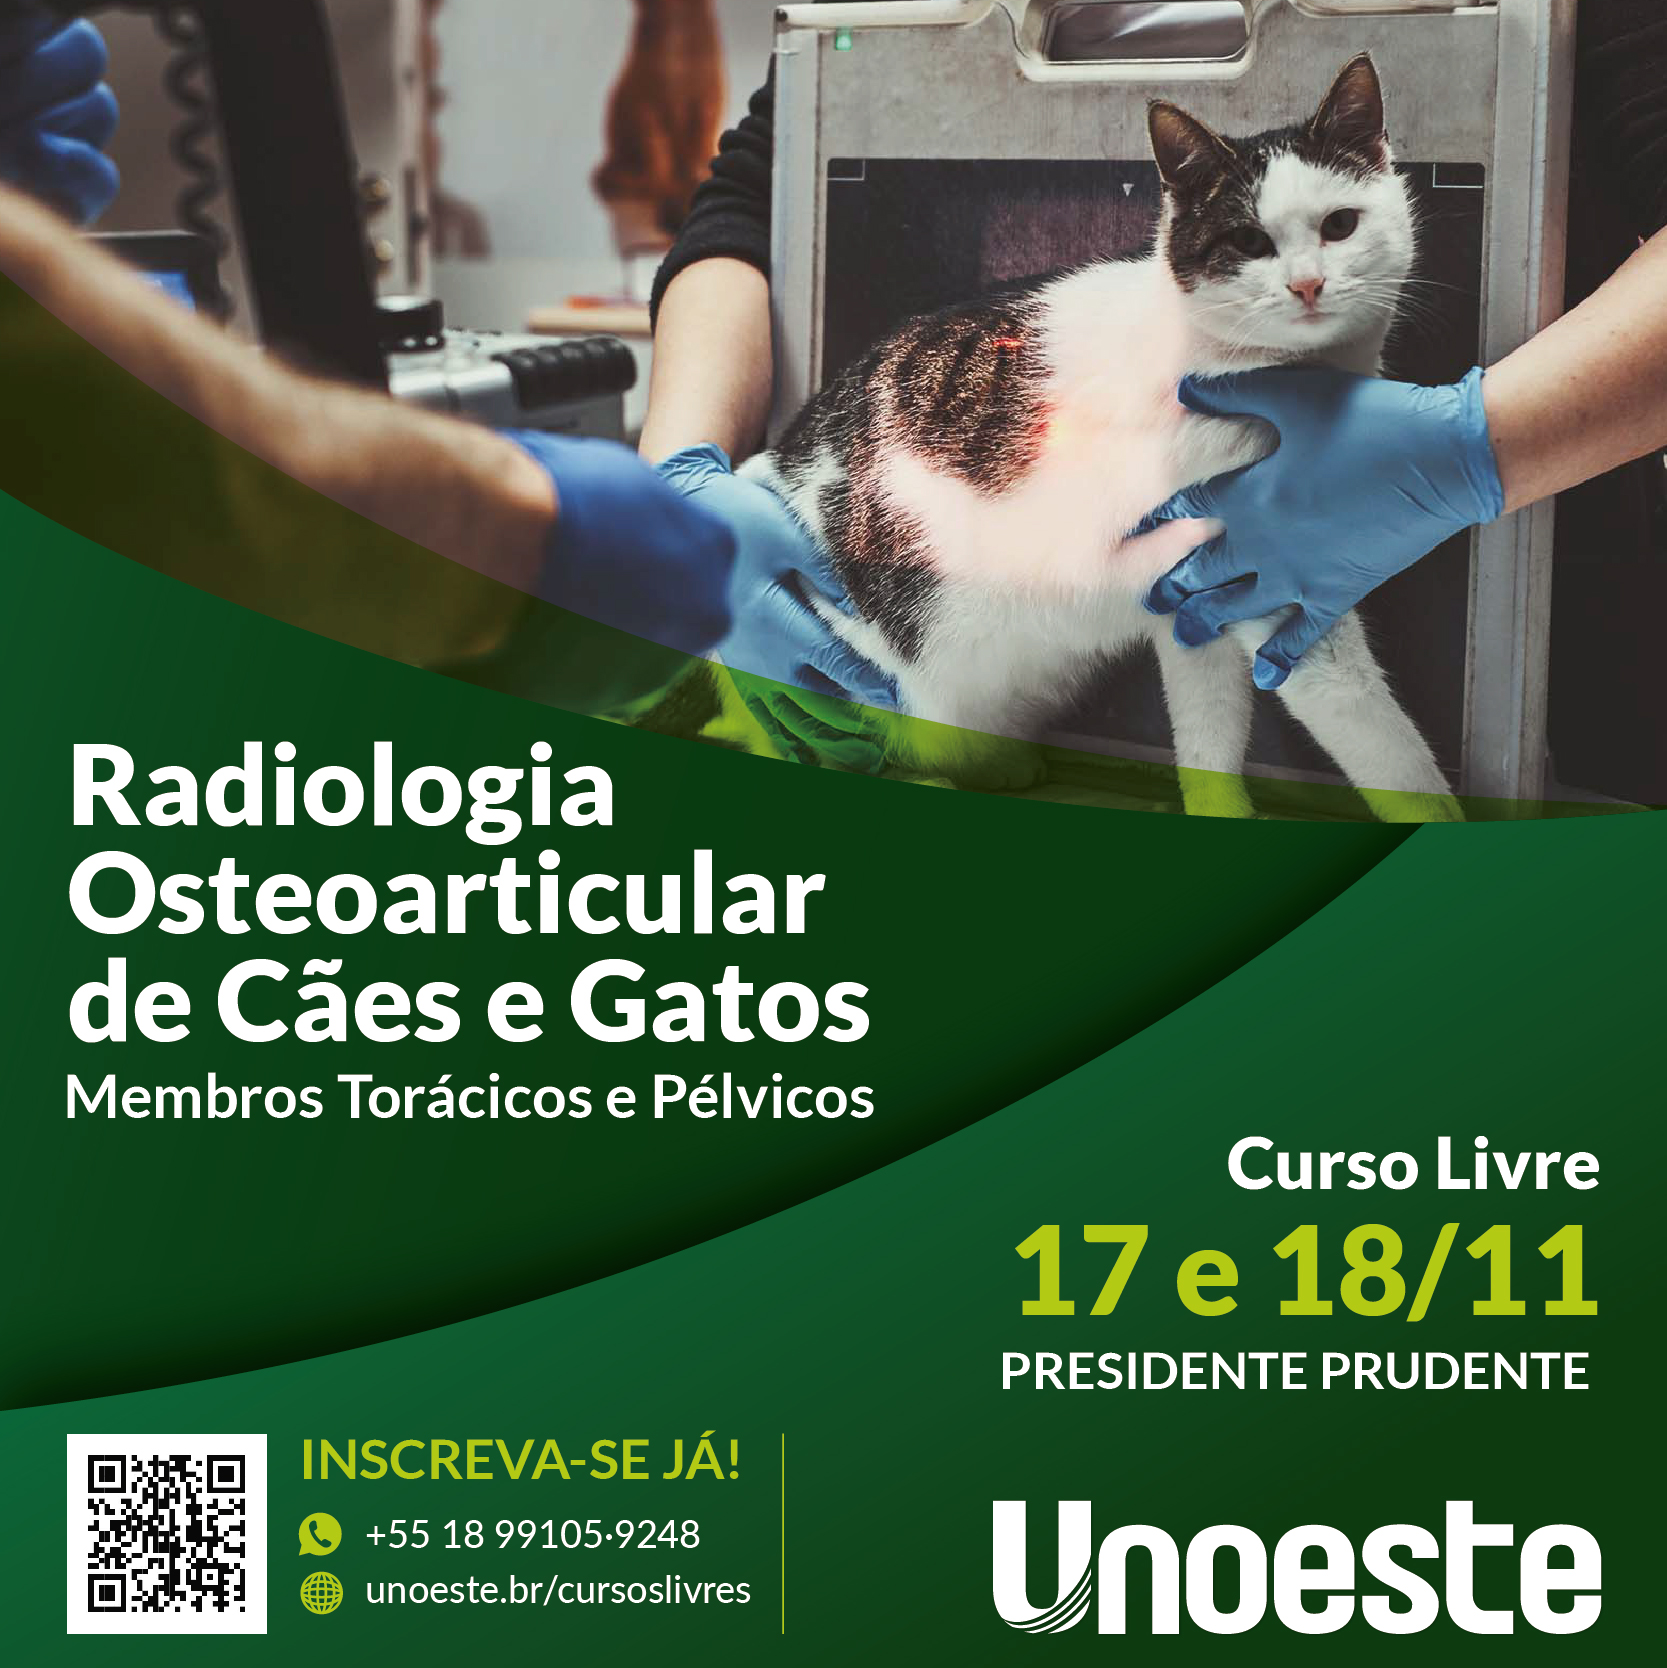 Radiologia Osteoarticular de Cães e Gatos: Membros Torácicos e Pélvicos                                                                                                                                                                                        